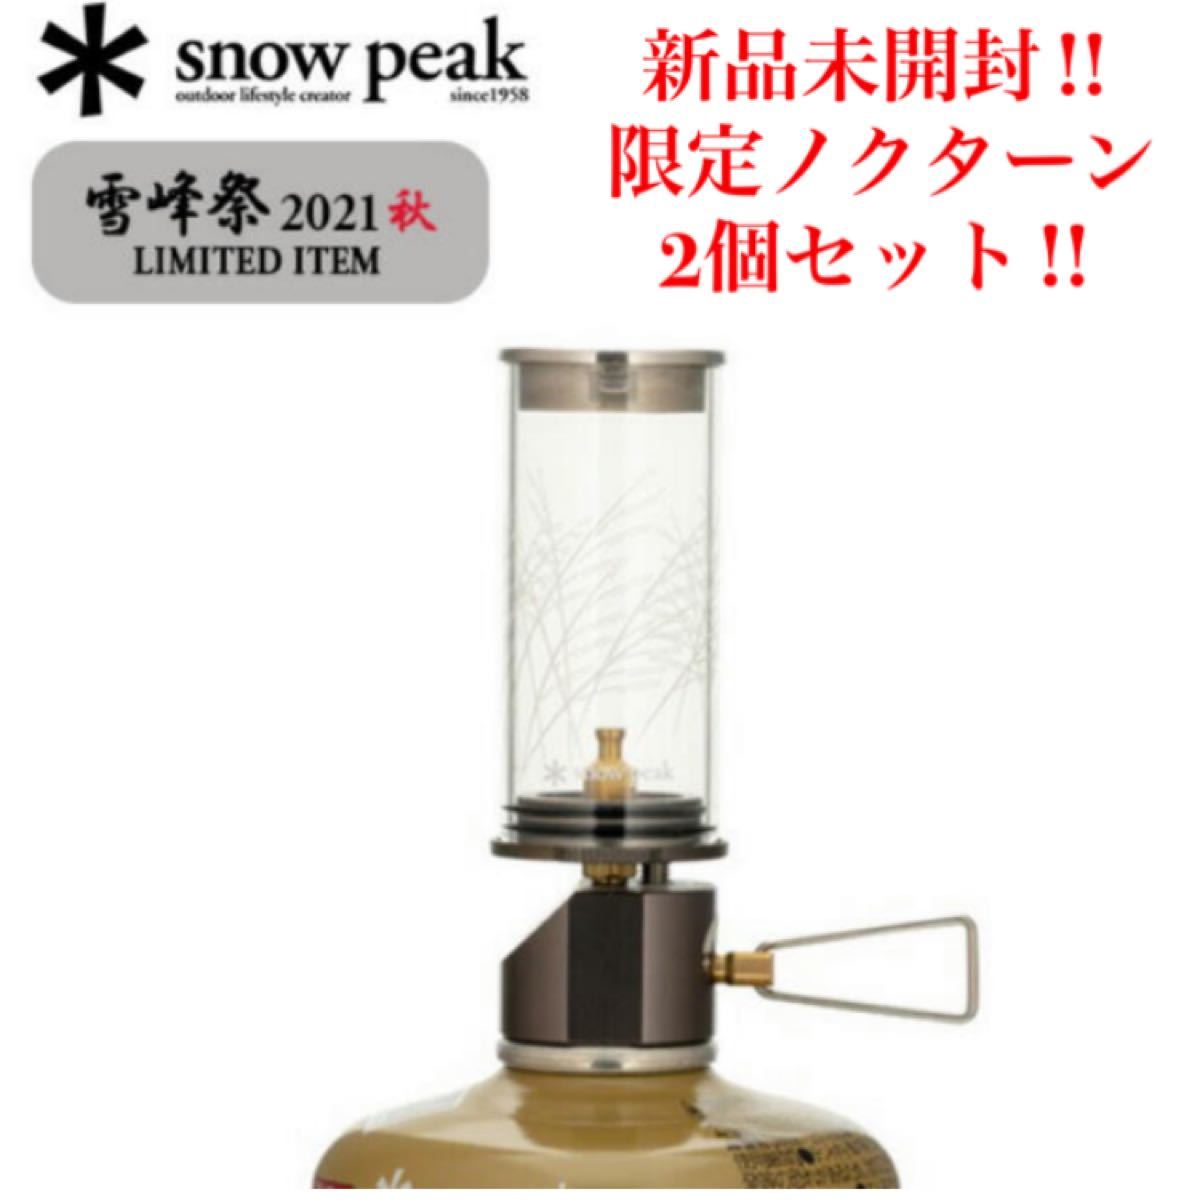 【新品・未使用・未開封】雪峰祭限定 fes-145 snow peakスノーピークノクターン 2021EDITION×2個セット！